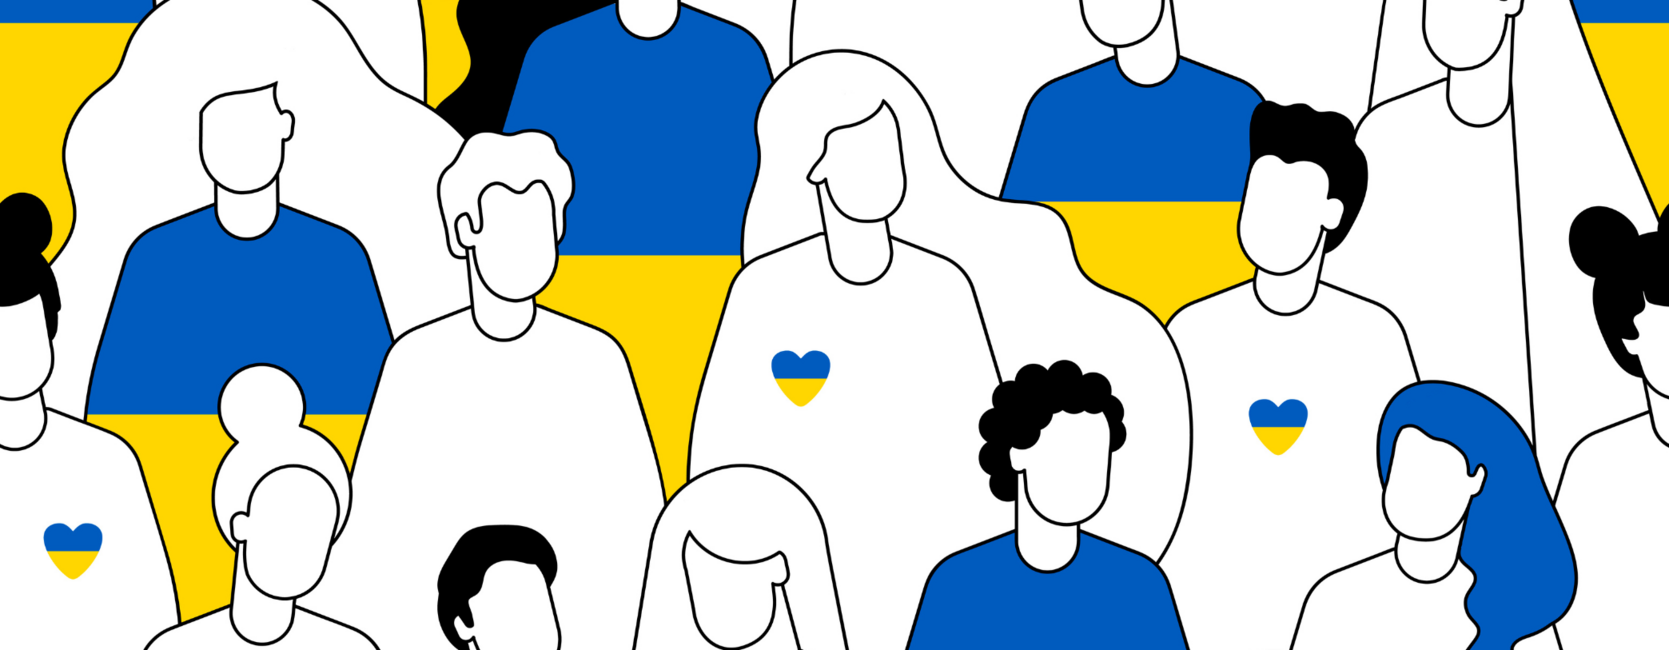 Grafische Darstellung von Männern und Frauen in den Farben der ukrainischen Flagge.